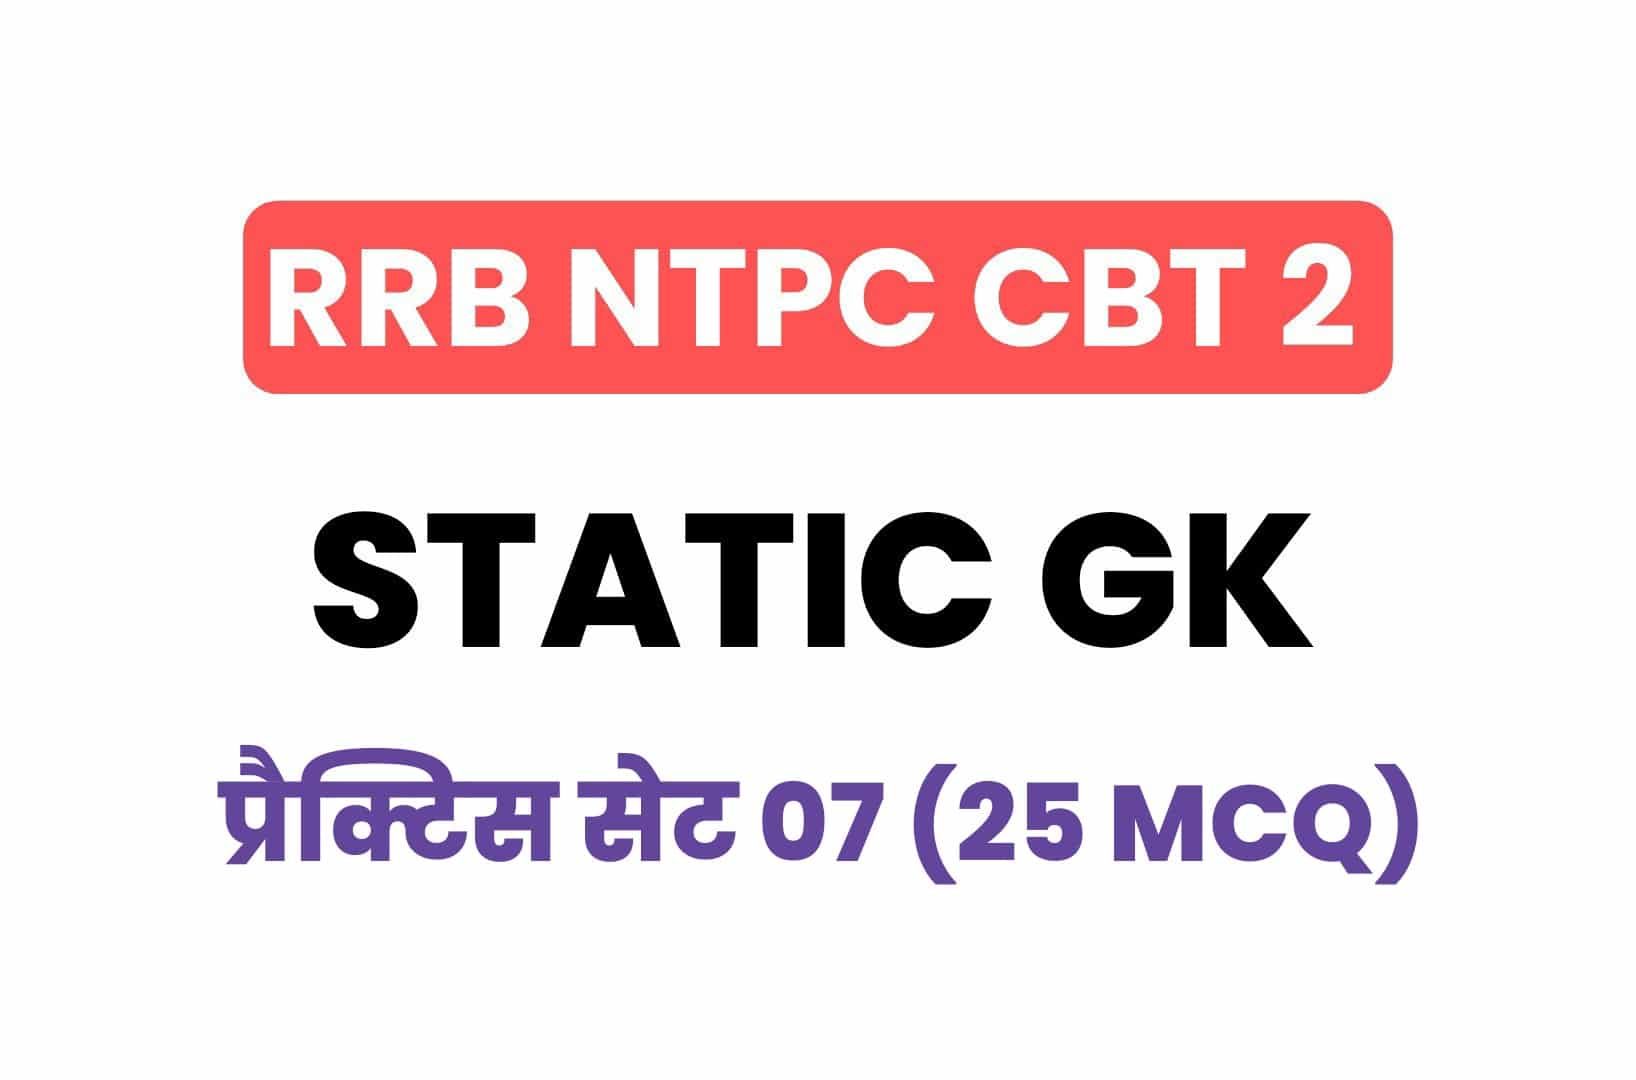 RRB NTPC CBT 2 Static GK प्रैक्टिस सेट 07: परीक्षा में पूछे गये महत्वपूर्ण प्रश्न, जरूर देखें